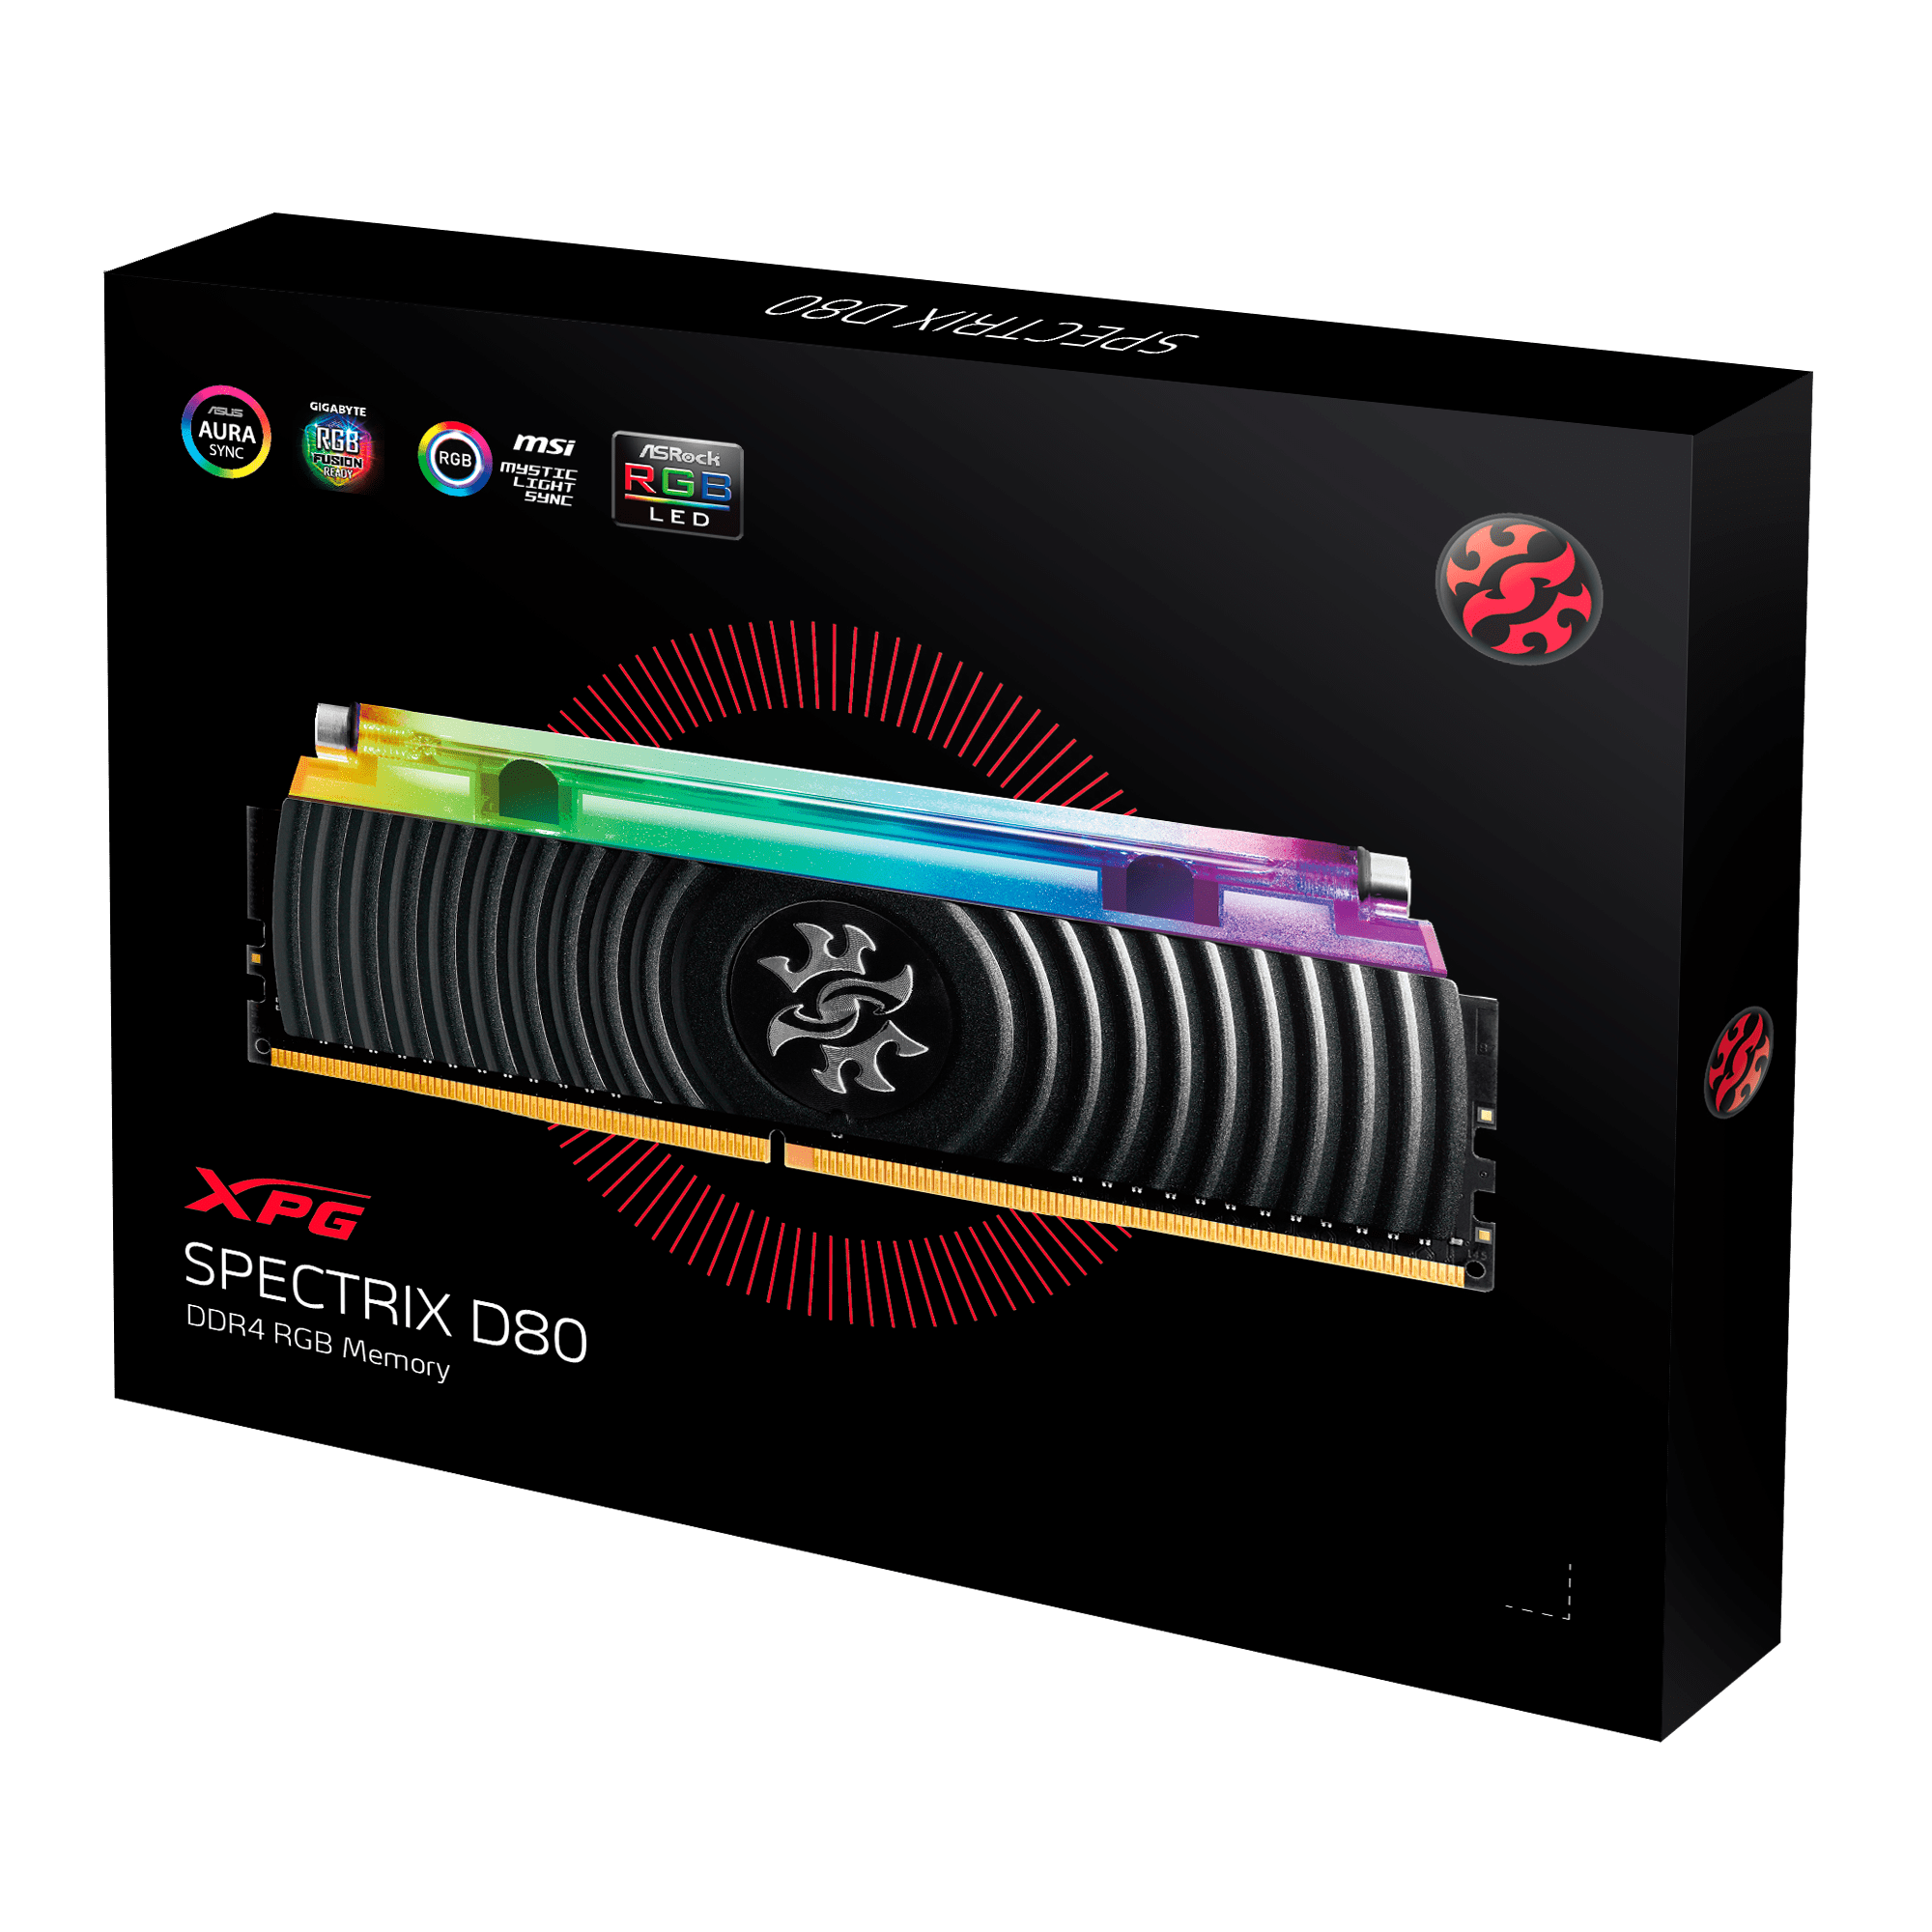 ADATA Spectrix D80 DDR4, 8GB 4133MHz 